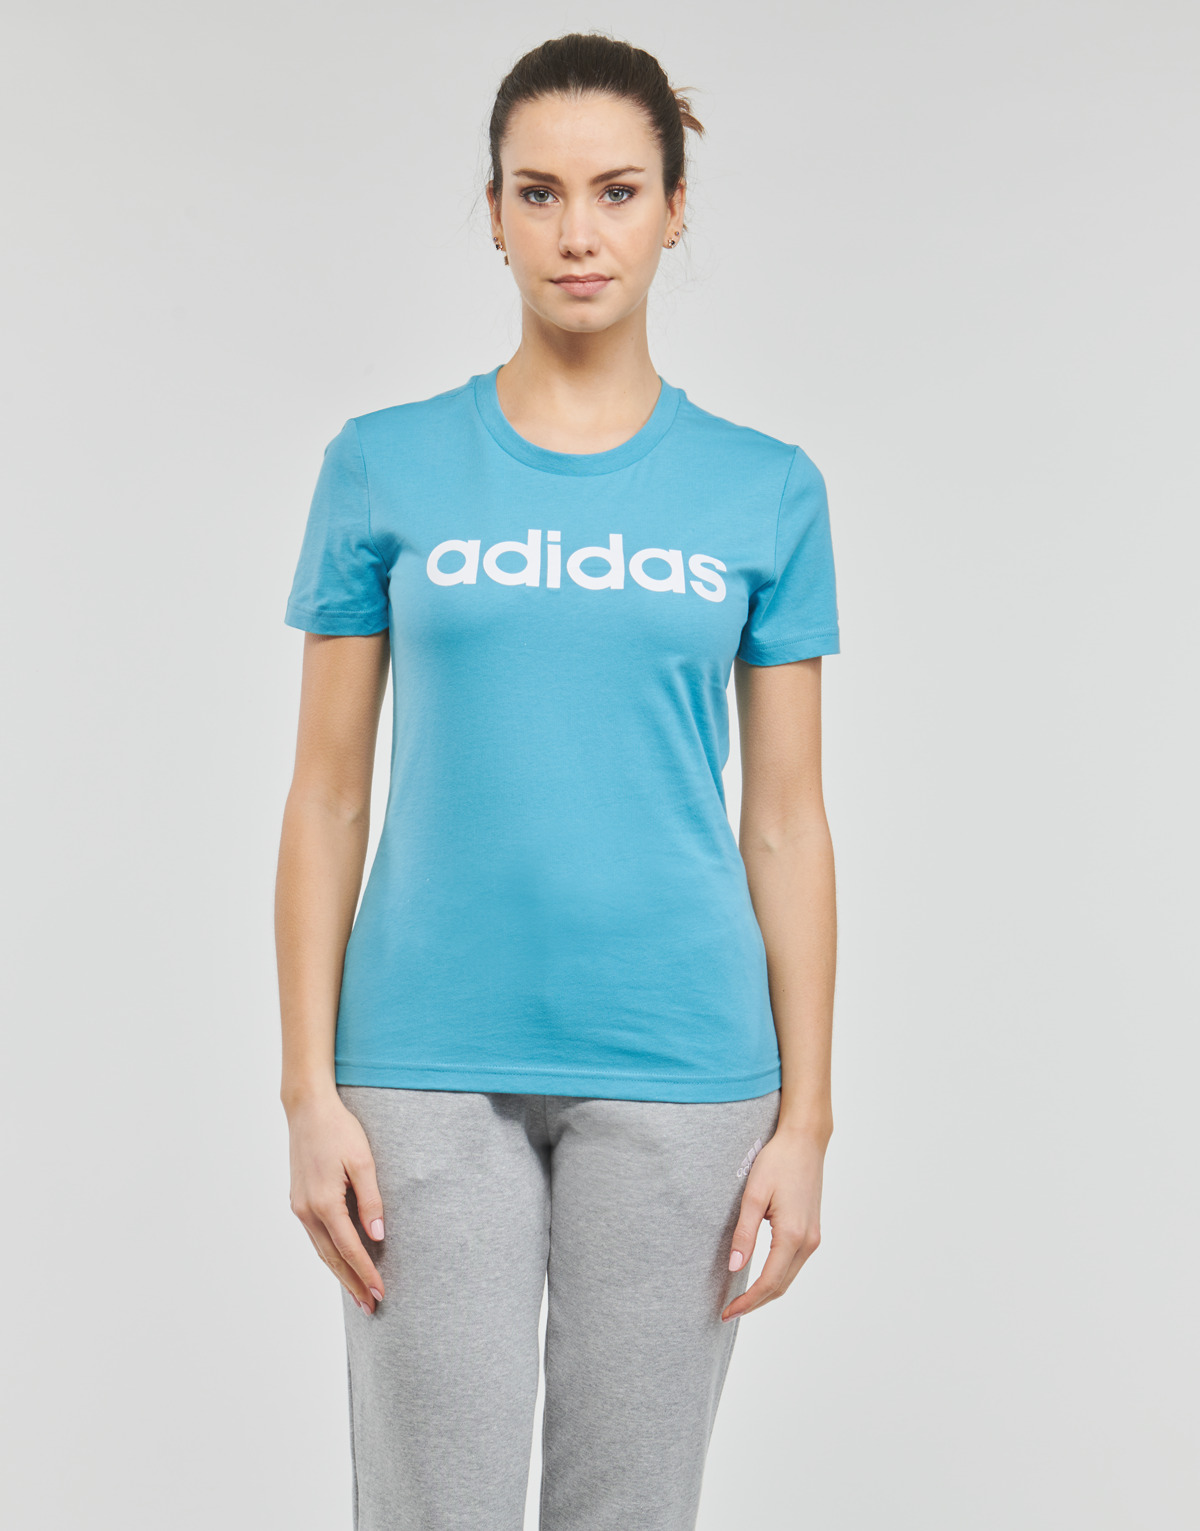 Adidas Sportswear Bleu LIN T grtX8Quz